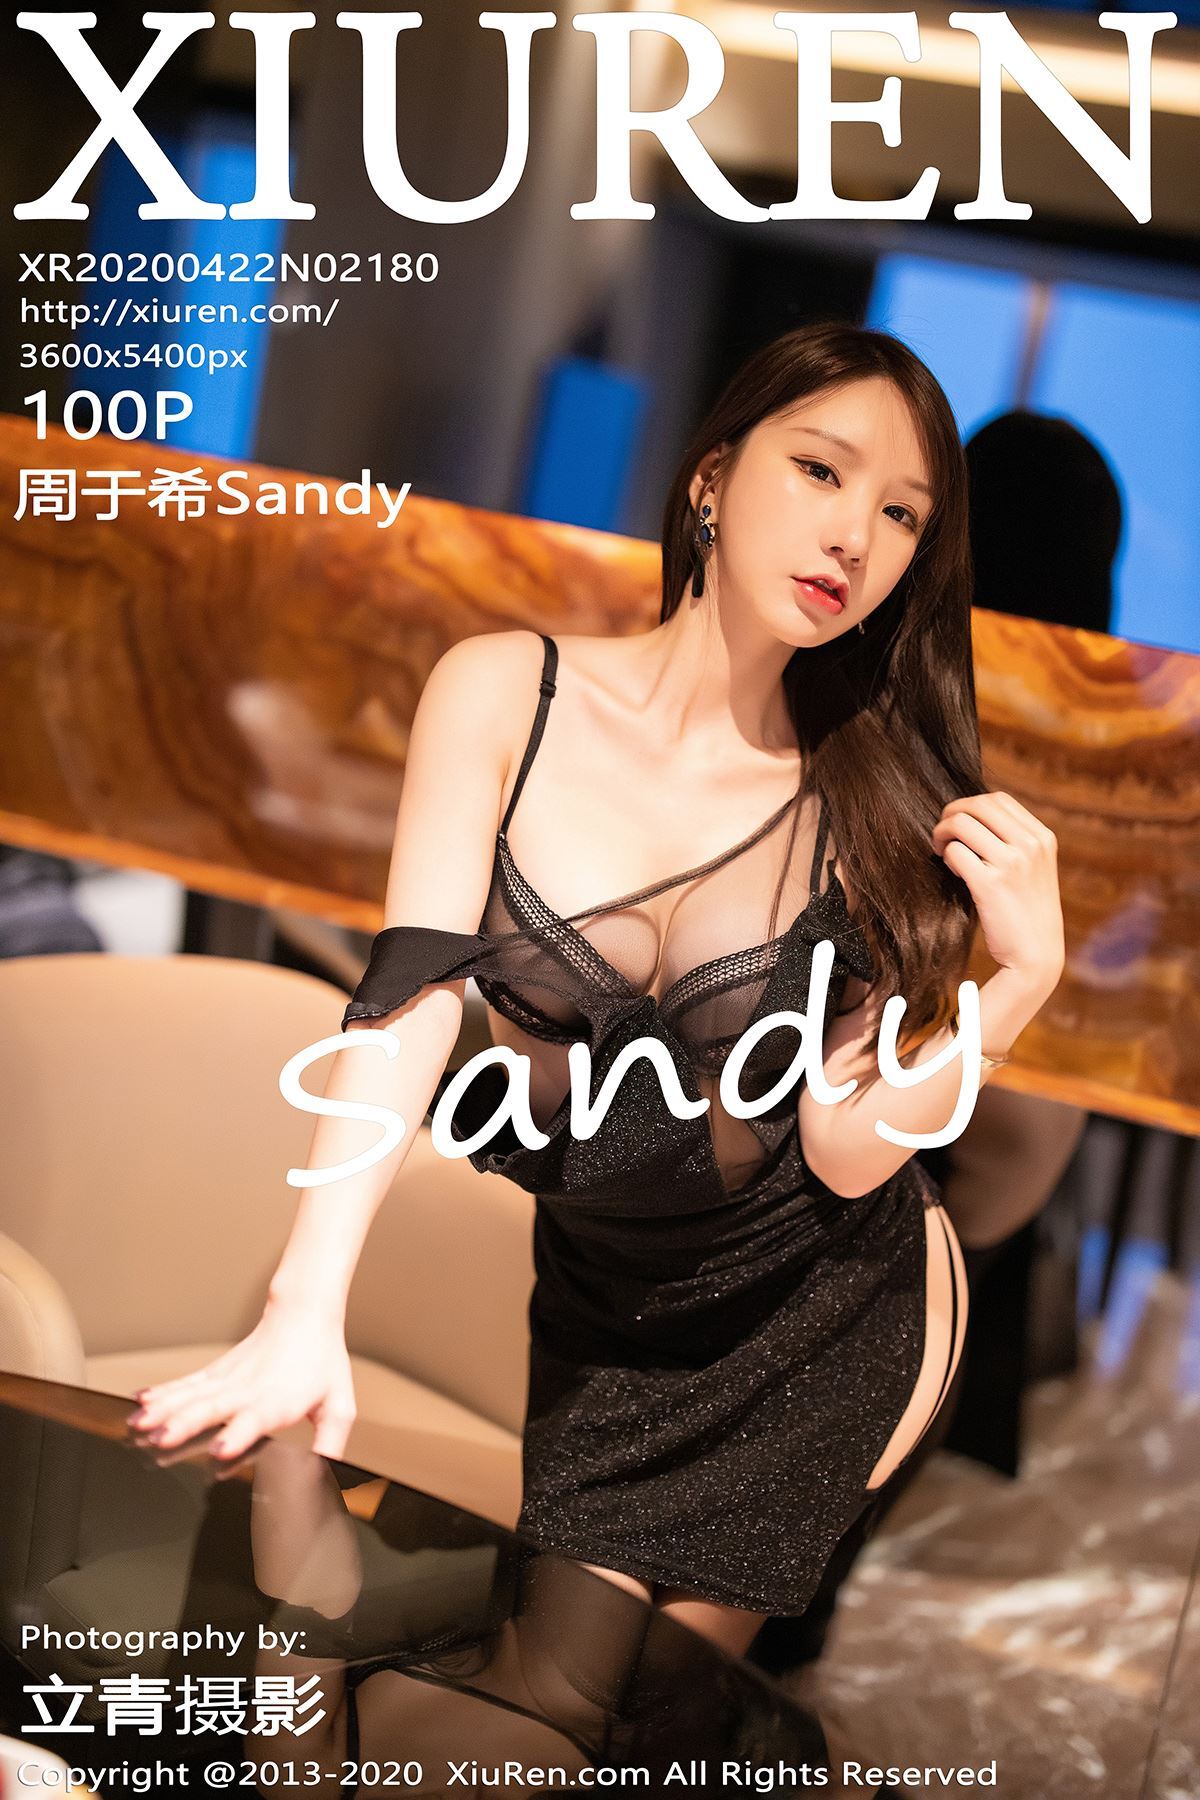 Xiuren.com.2020.04.22 no.2180 Zhou Yuxi Sandy